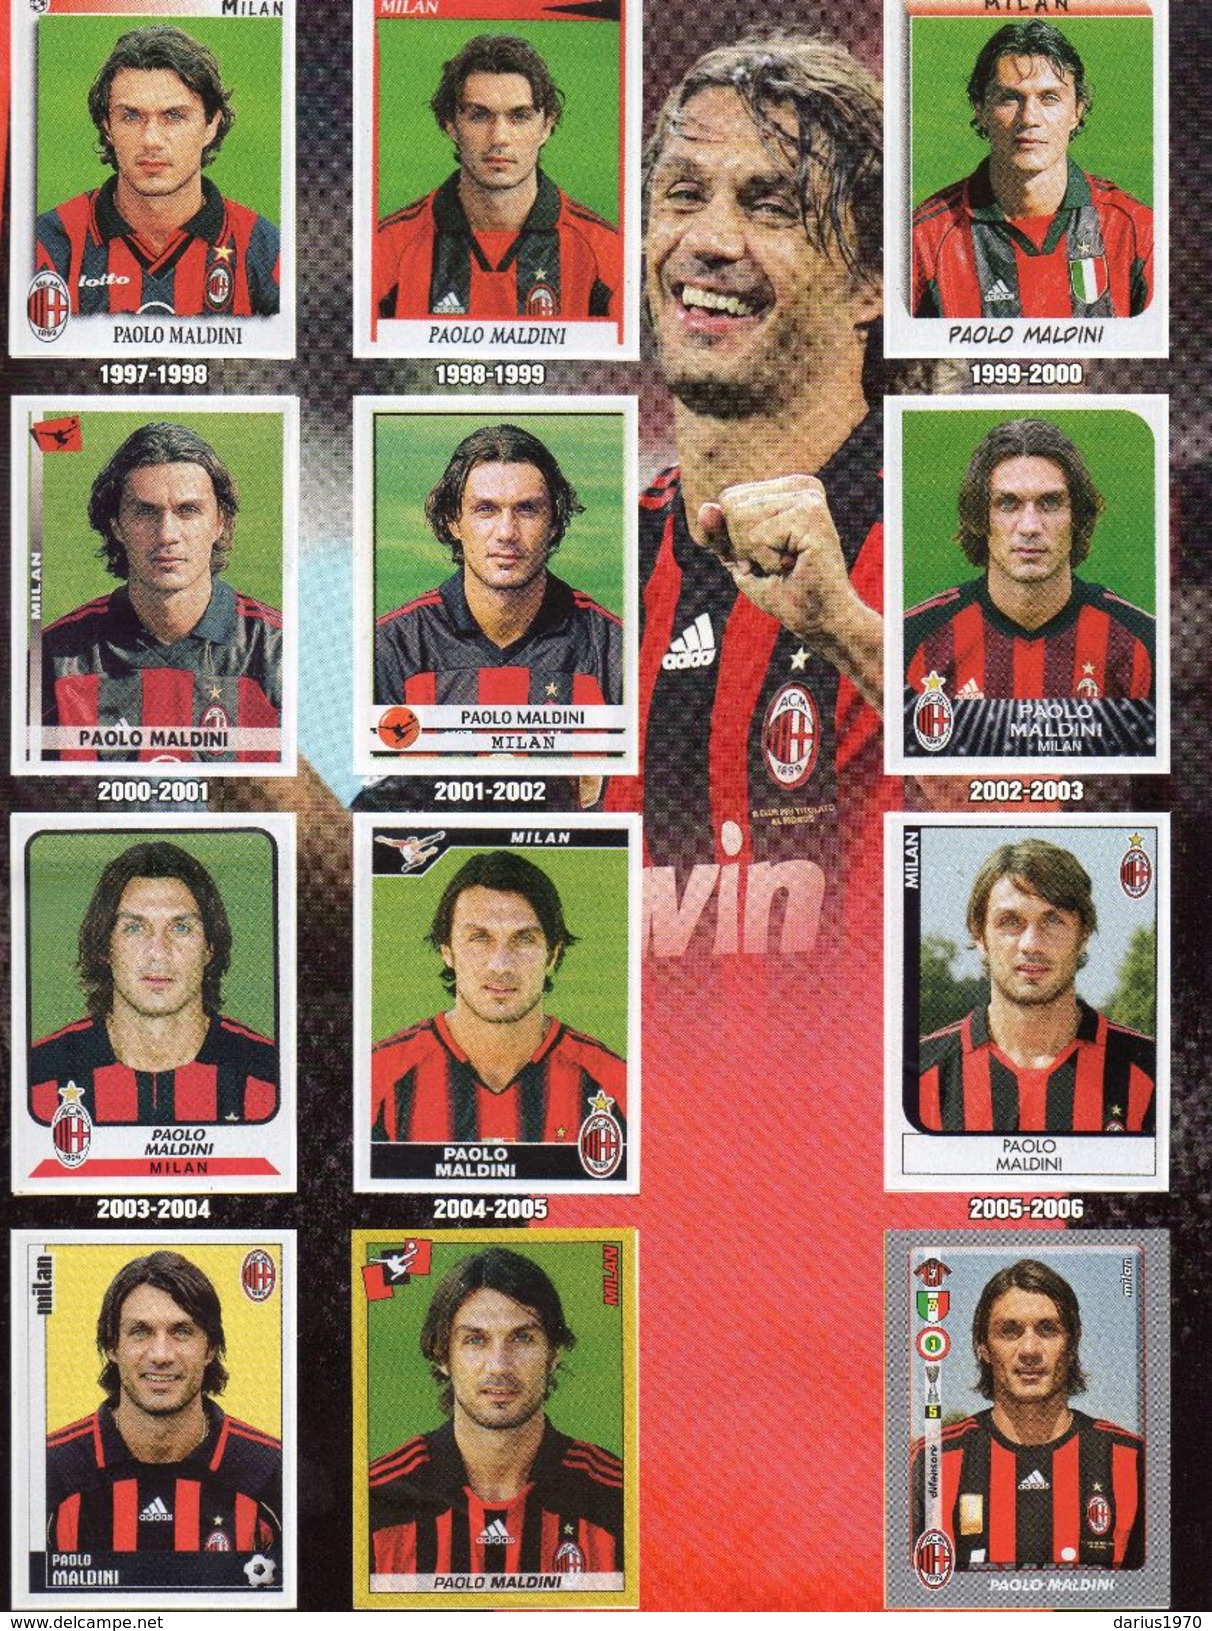 Paolo Maldini - Una Vita In Rossonero 1985 - 2009 Figurine Panini Album Completo - Sport